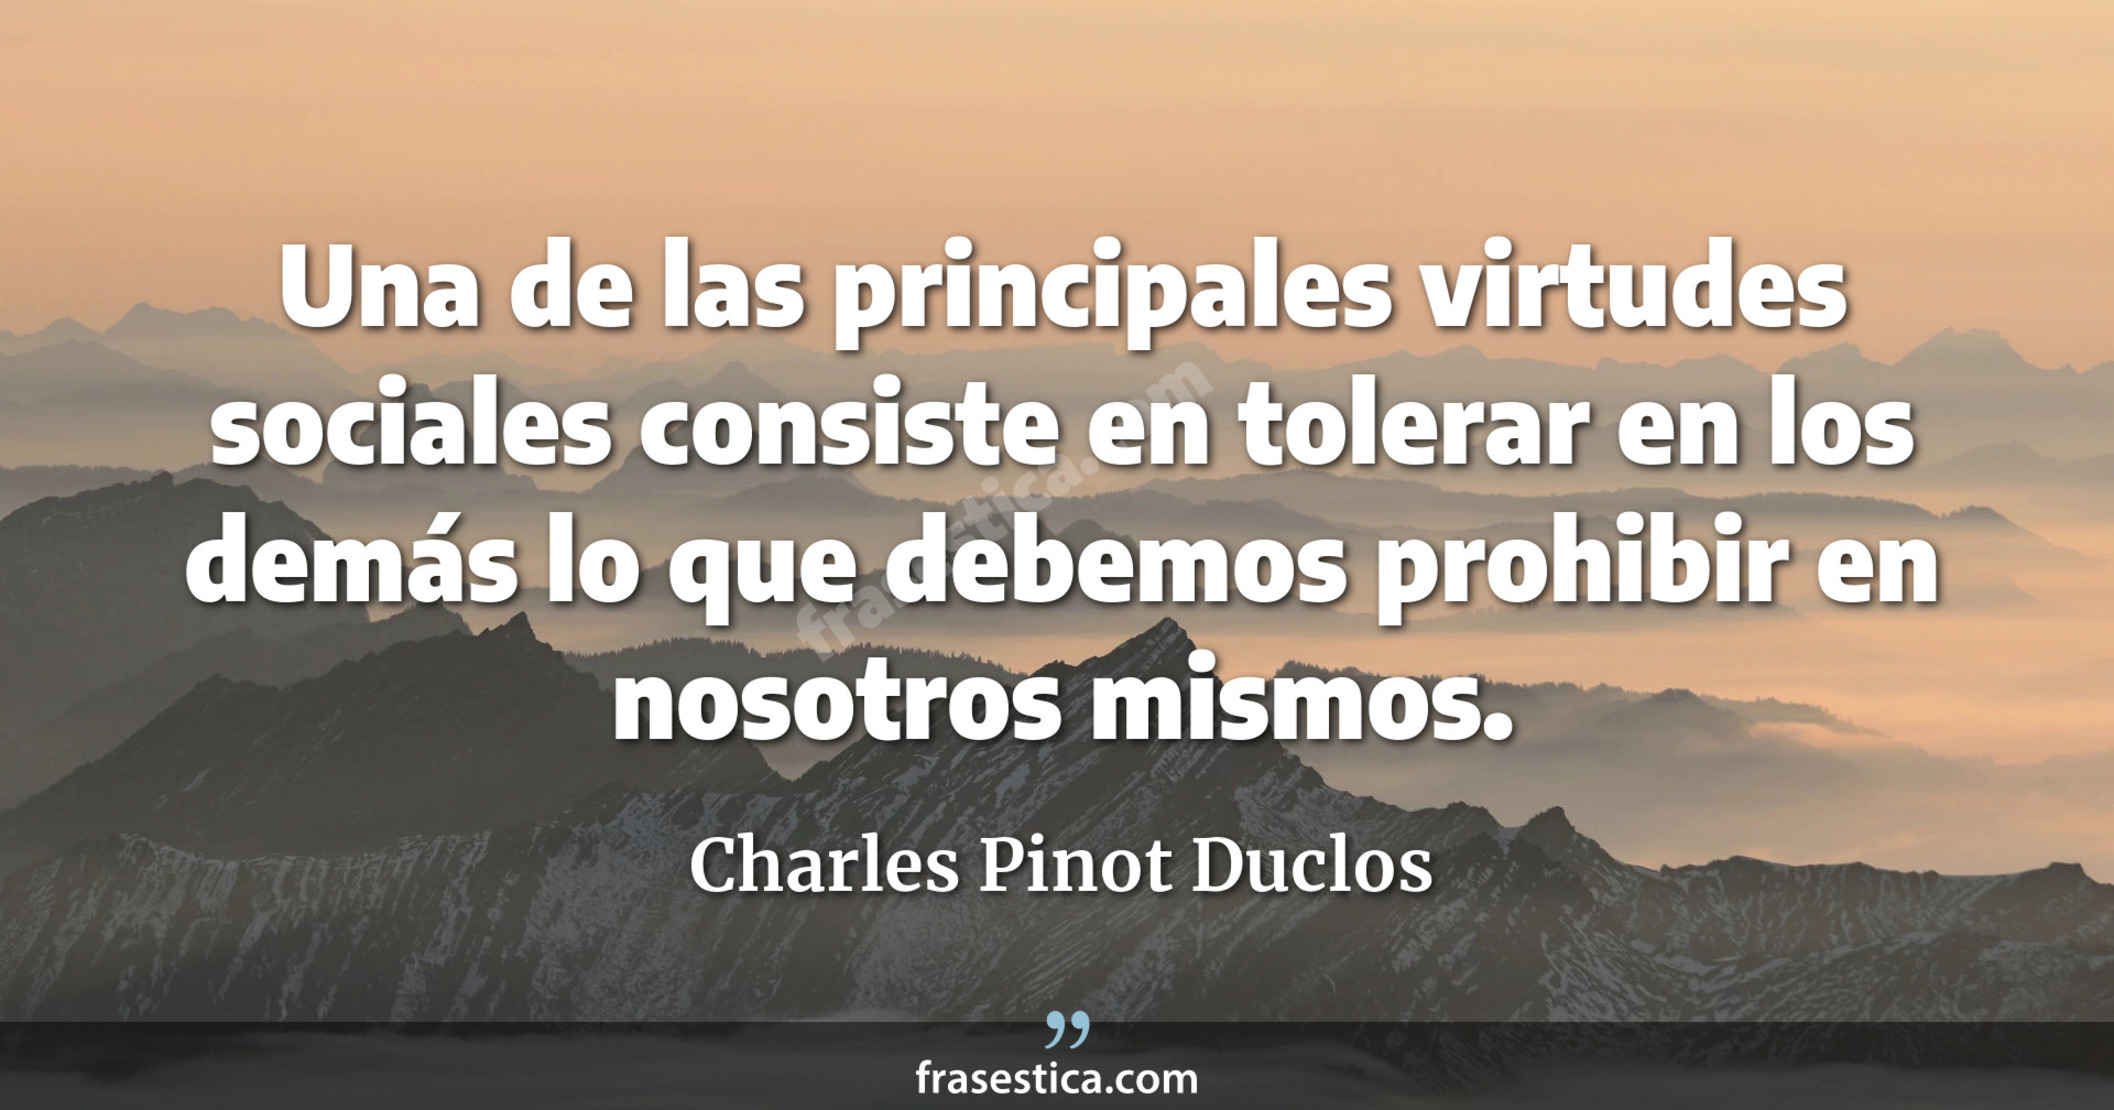 Una de las principales virtudes sociales consiste en tolerar en los demás lo que debemos prohibir en nosotros mismos. - Charles Pinot Duclos